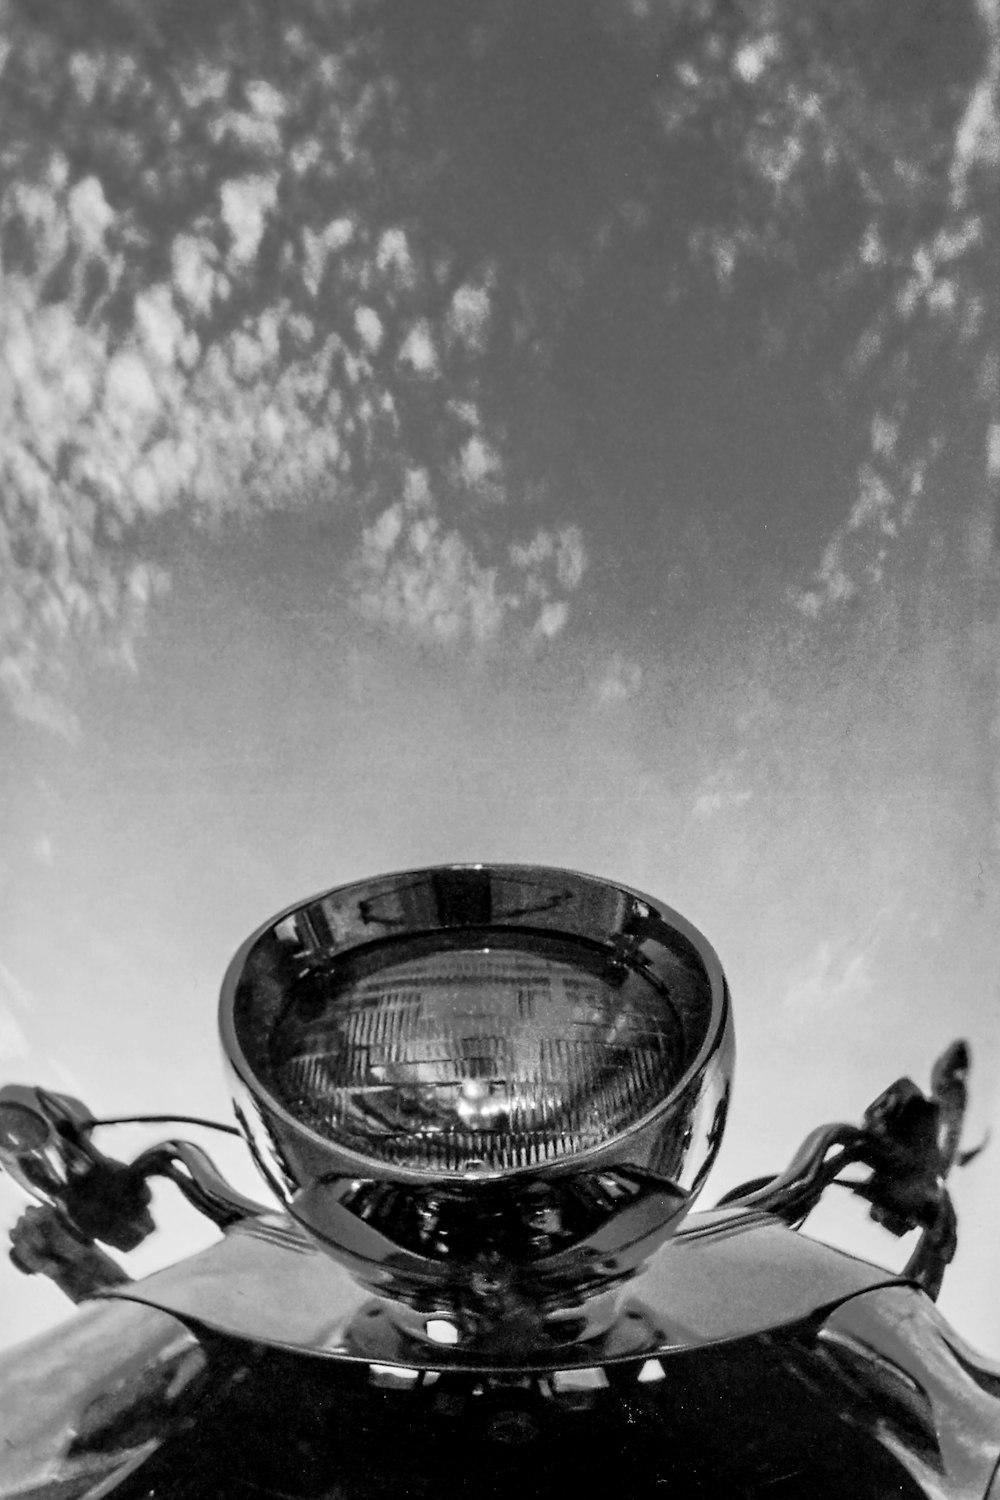 ライト付きオートバイのグレースケール写真